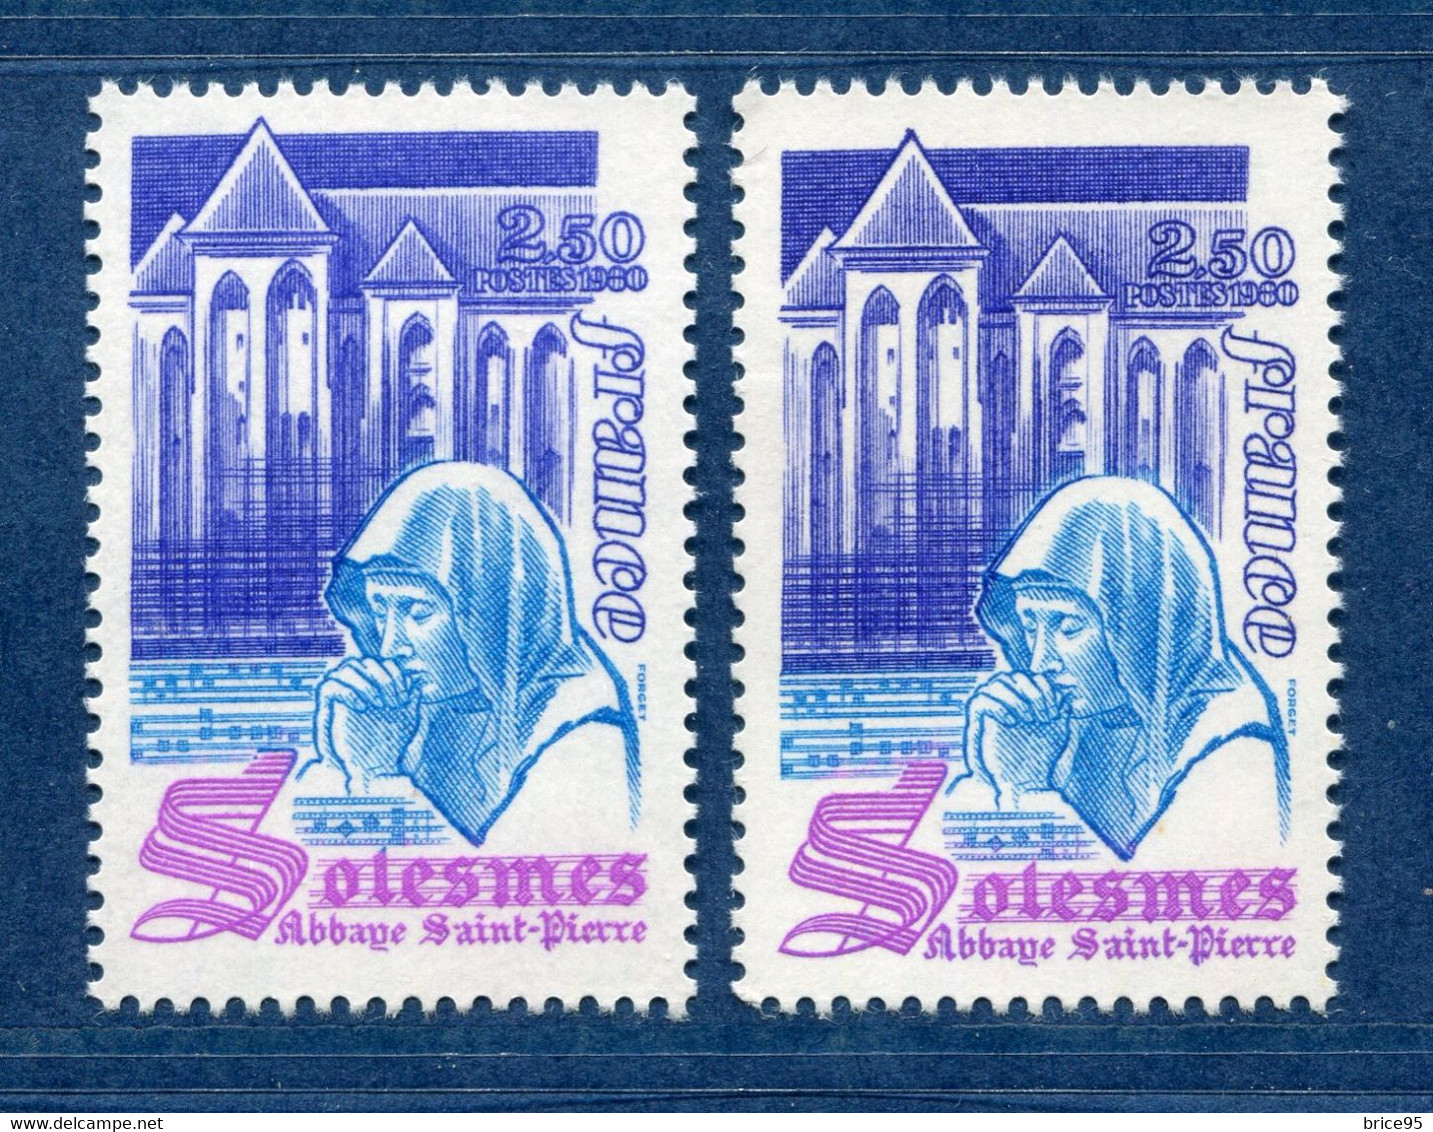 ⭐ France - Variété - YT N° 2112 - Couleurs - Neuf Sans Charnière - 1980 ⭐ - Unused Stamps